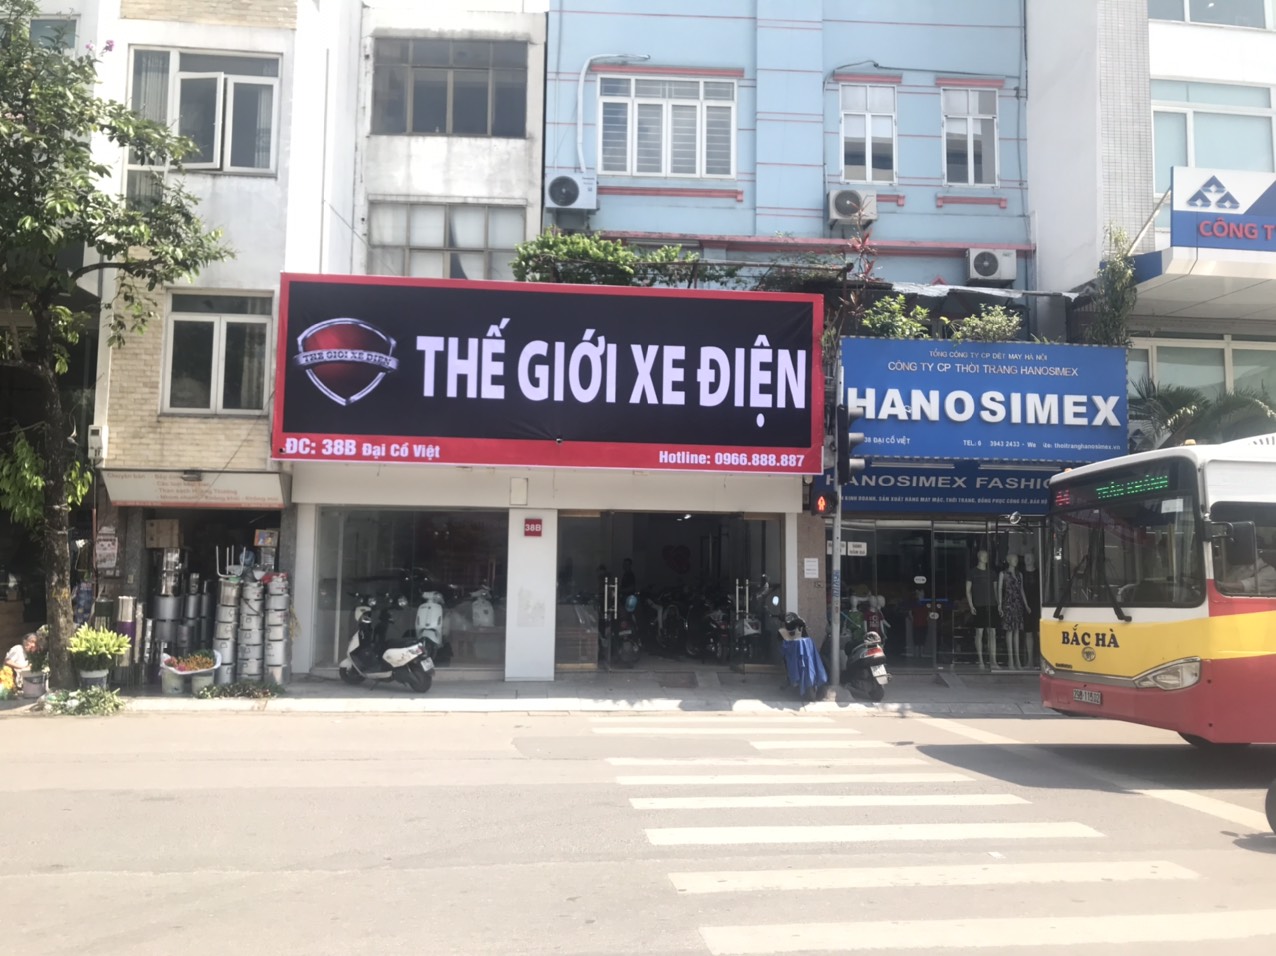 Đại lý bán xe điện chính hãng của TGXĐ tại Hà Nội